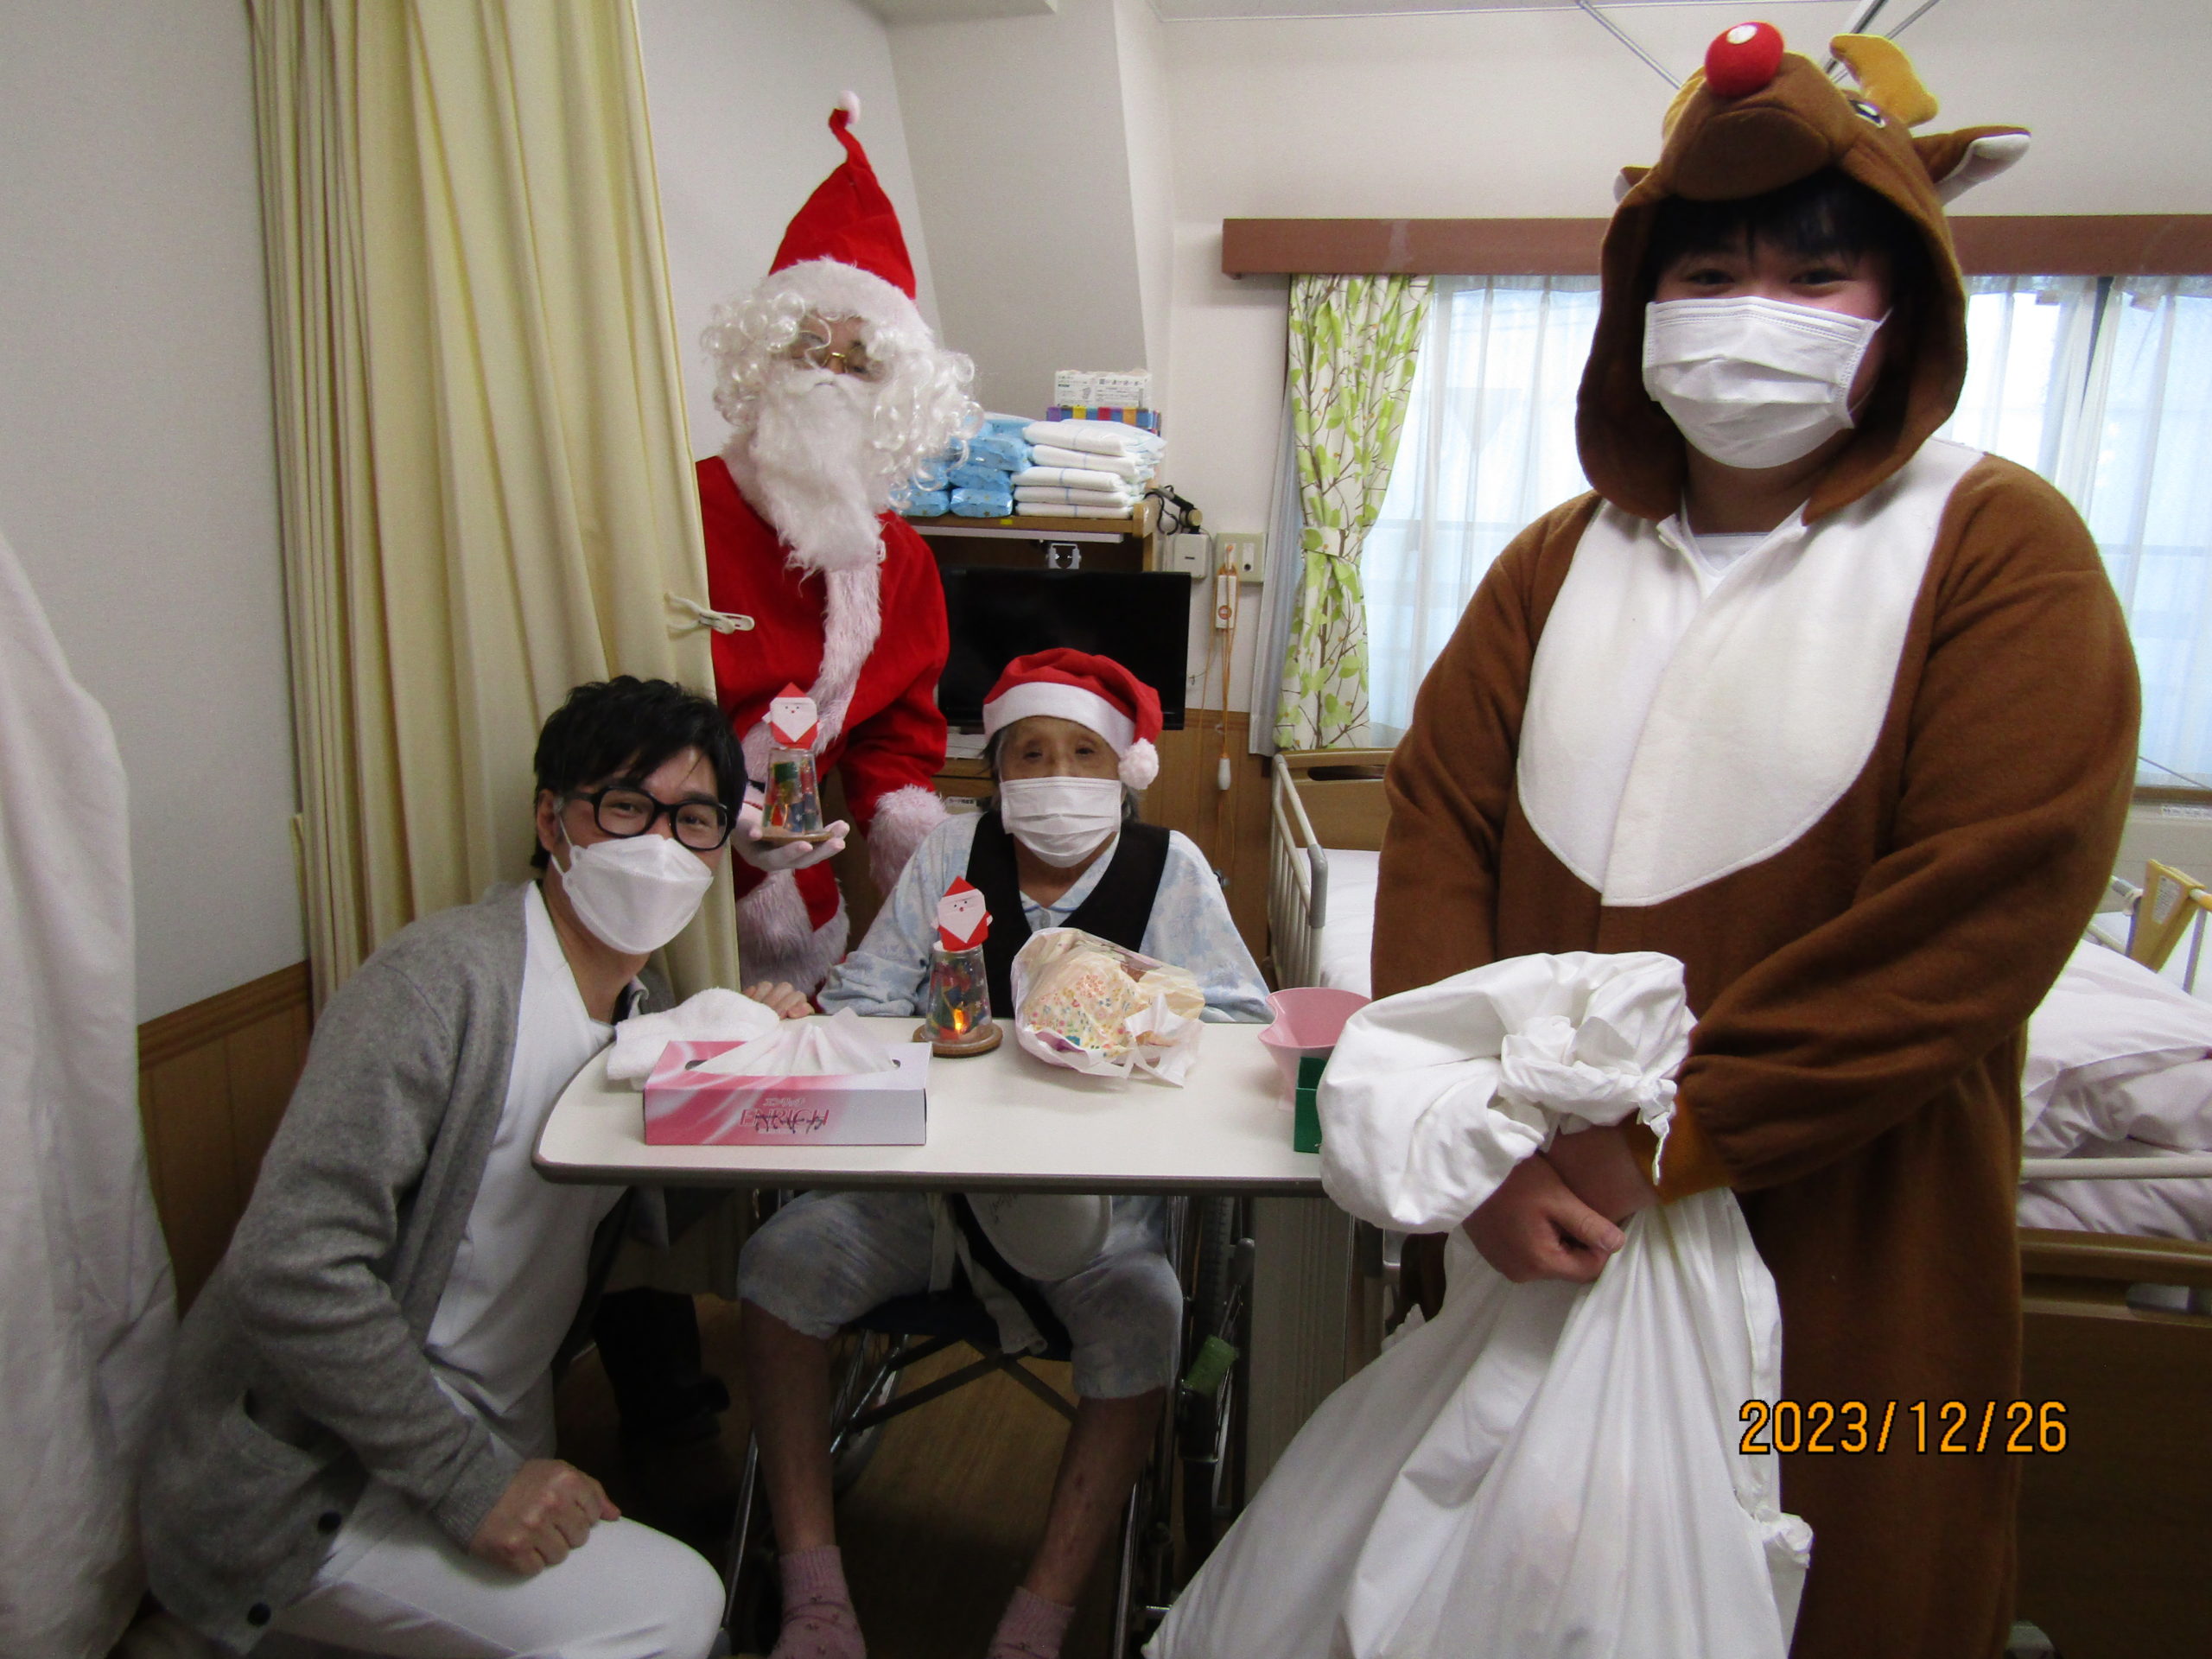 入院患者様とクリスマス会を行いました。